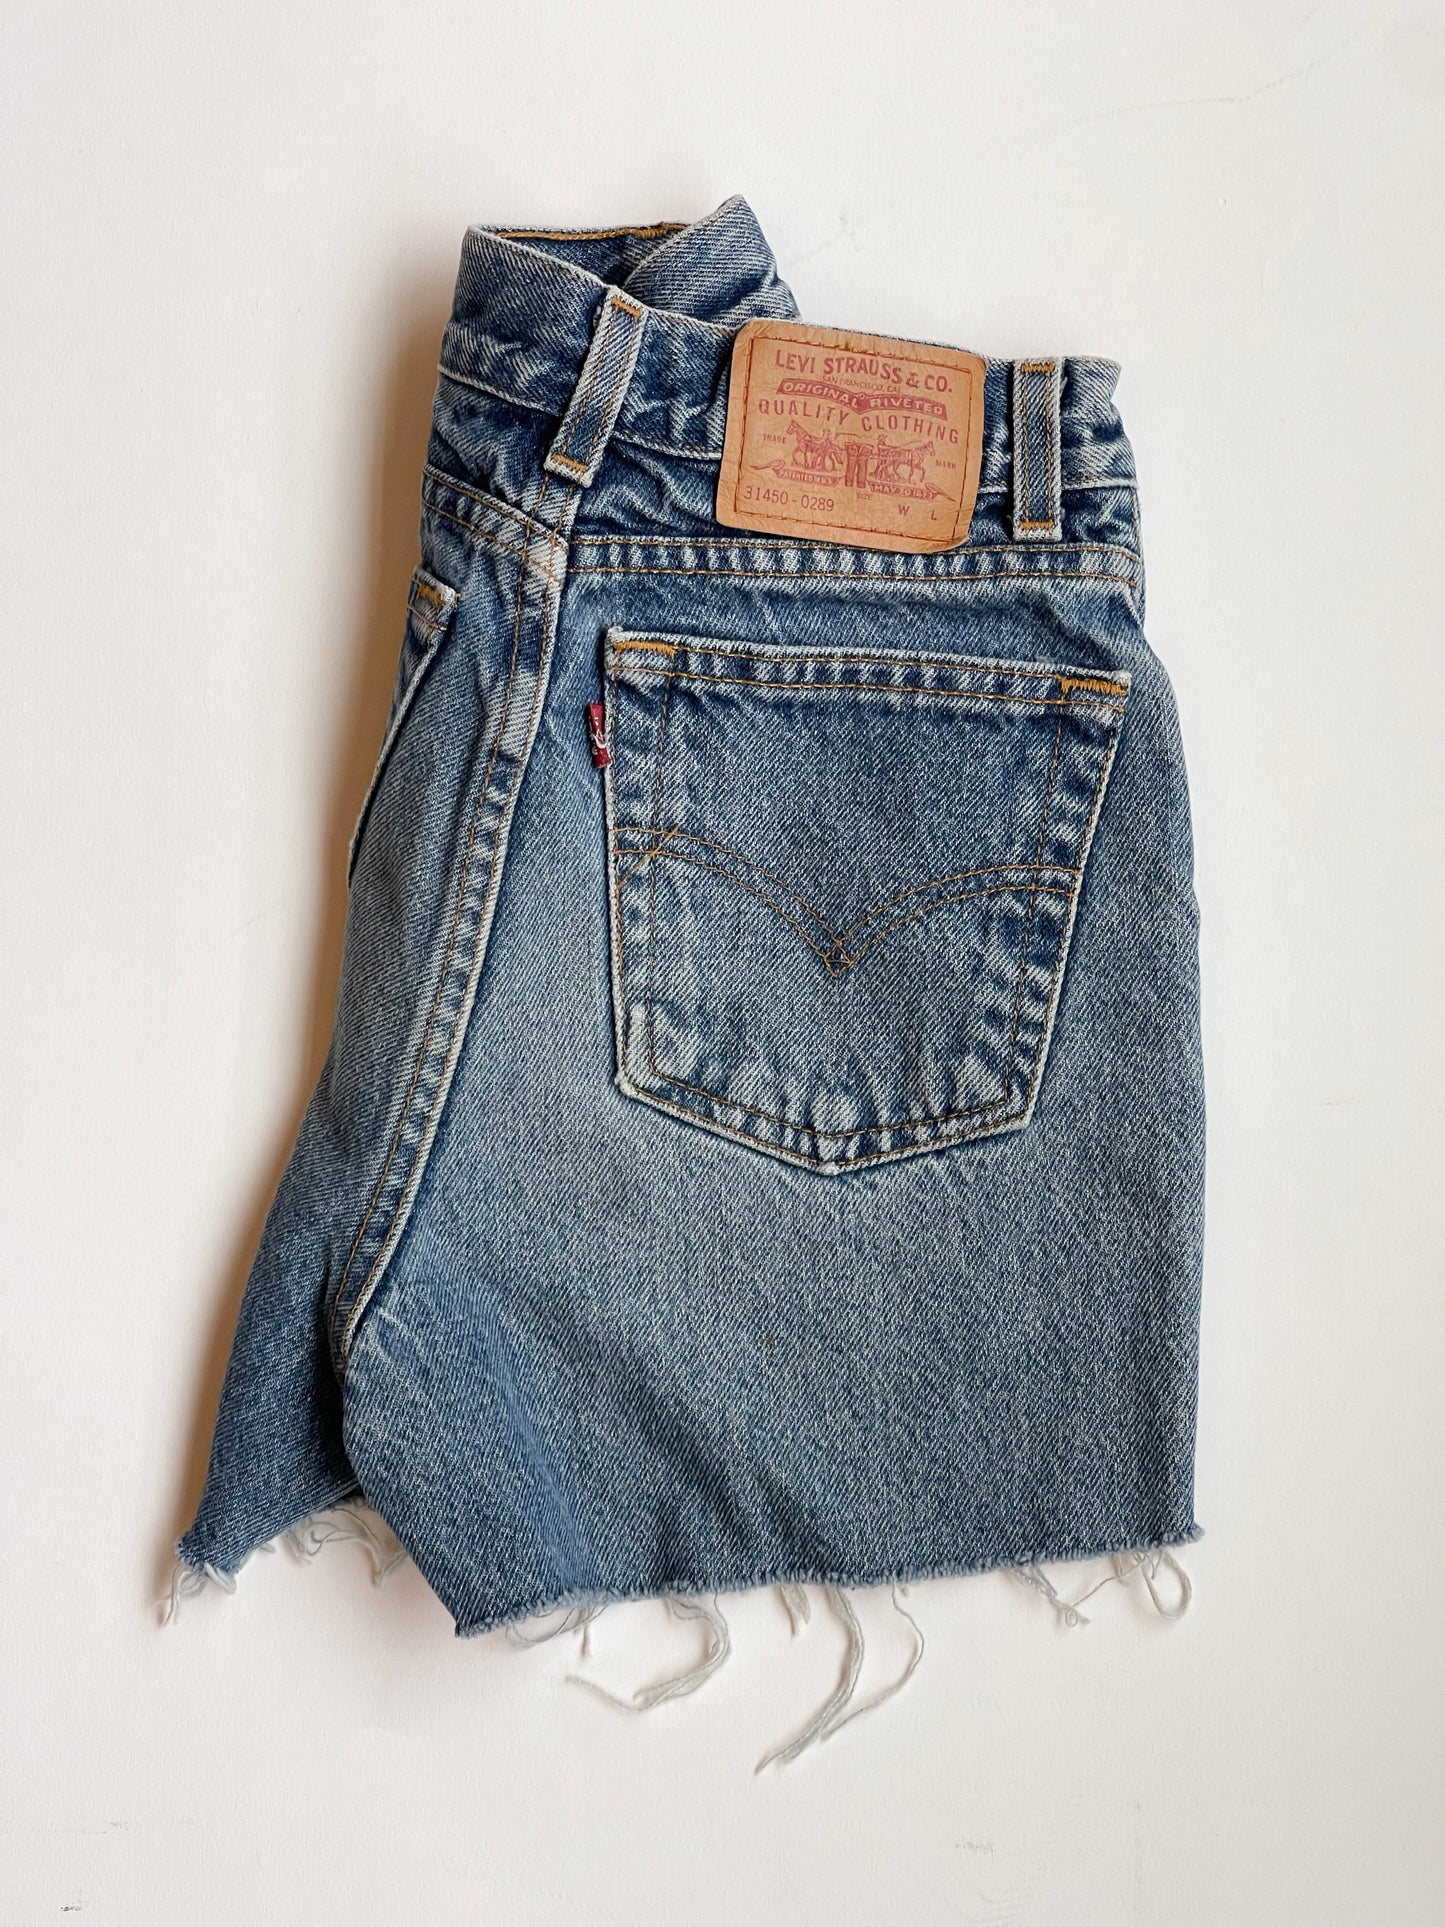 Vintage High-rise Levi's cutoff shorts - 24” W